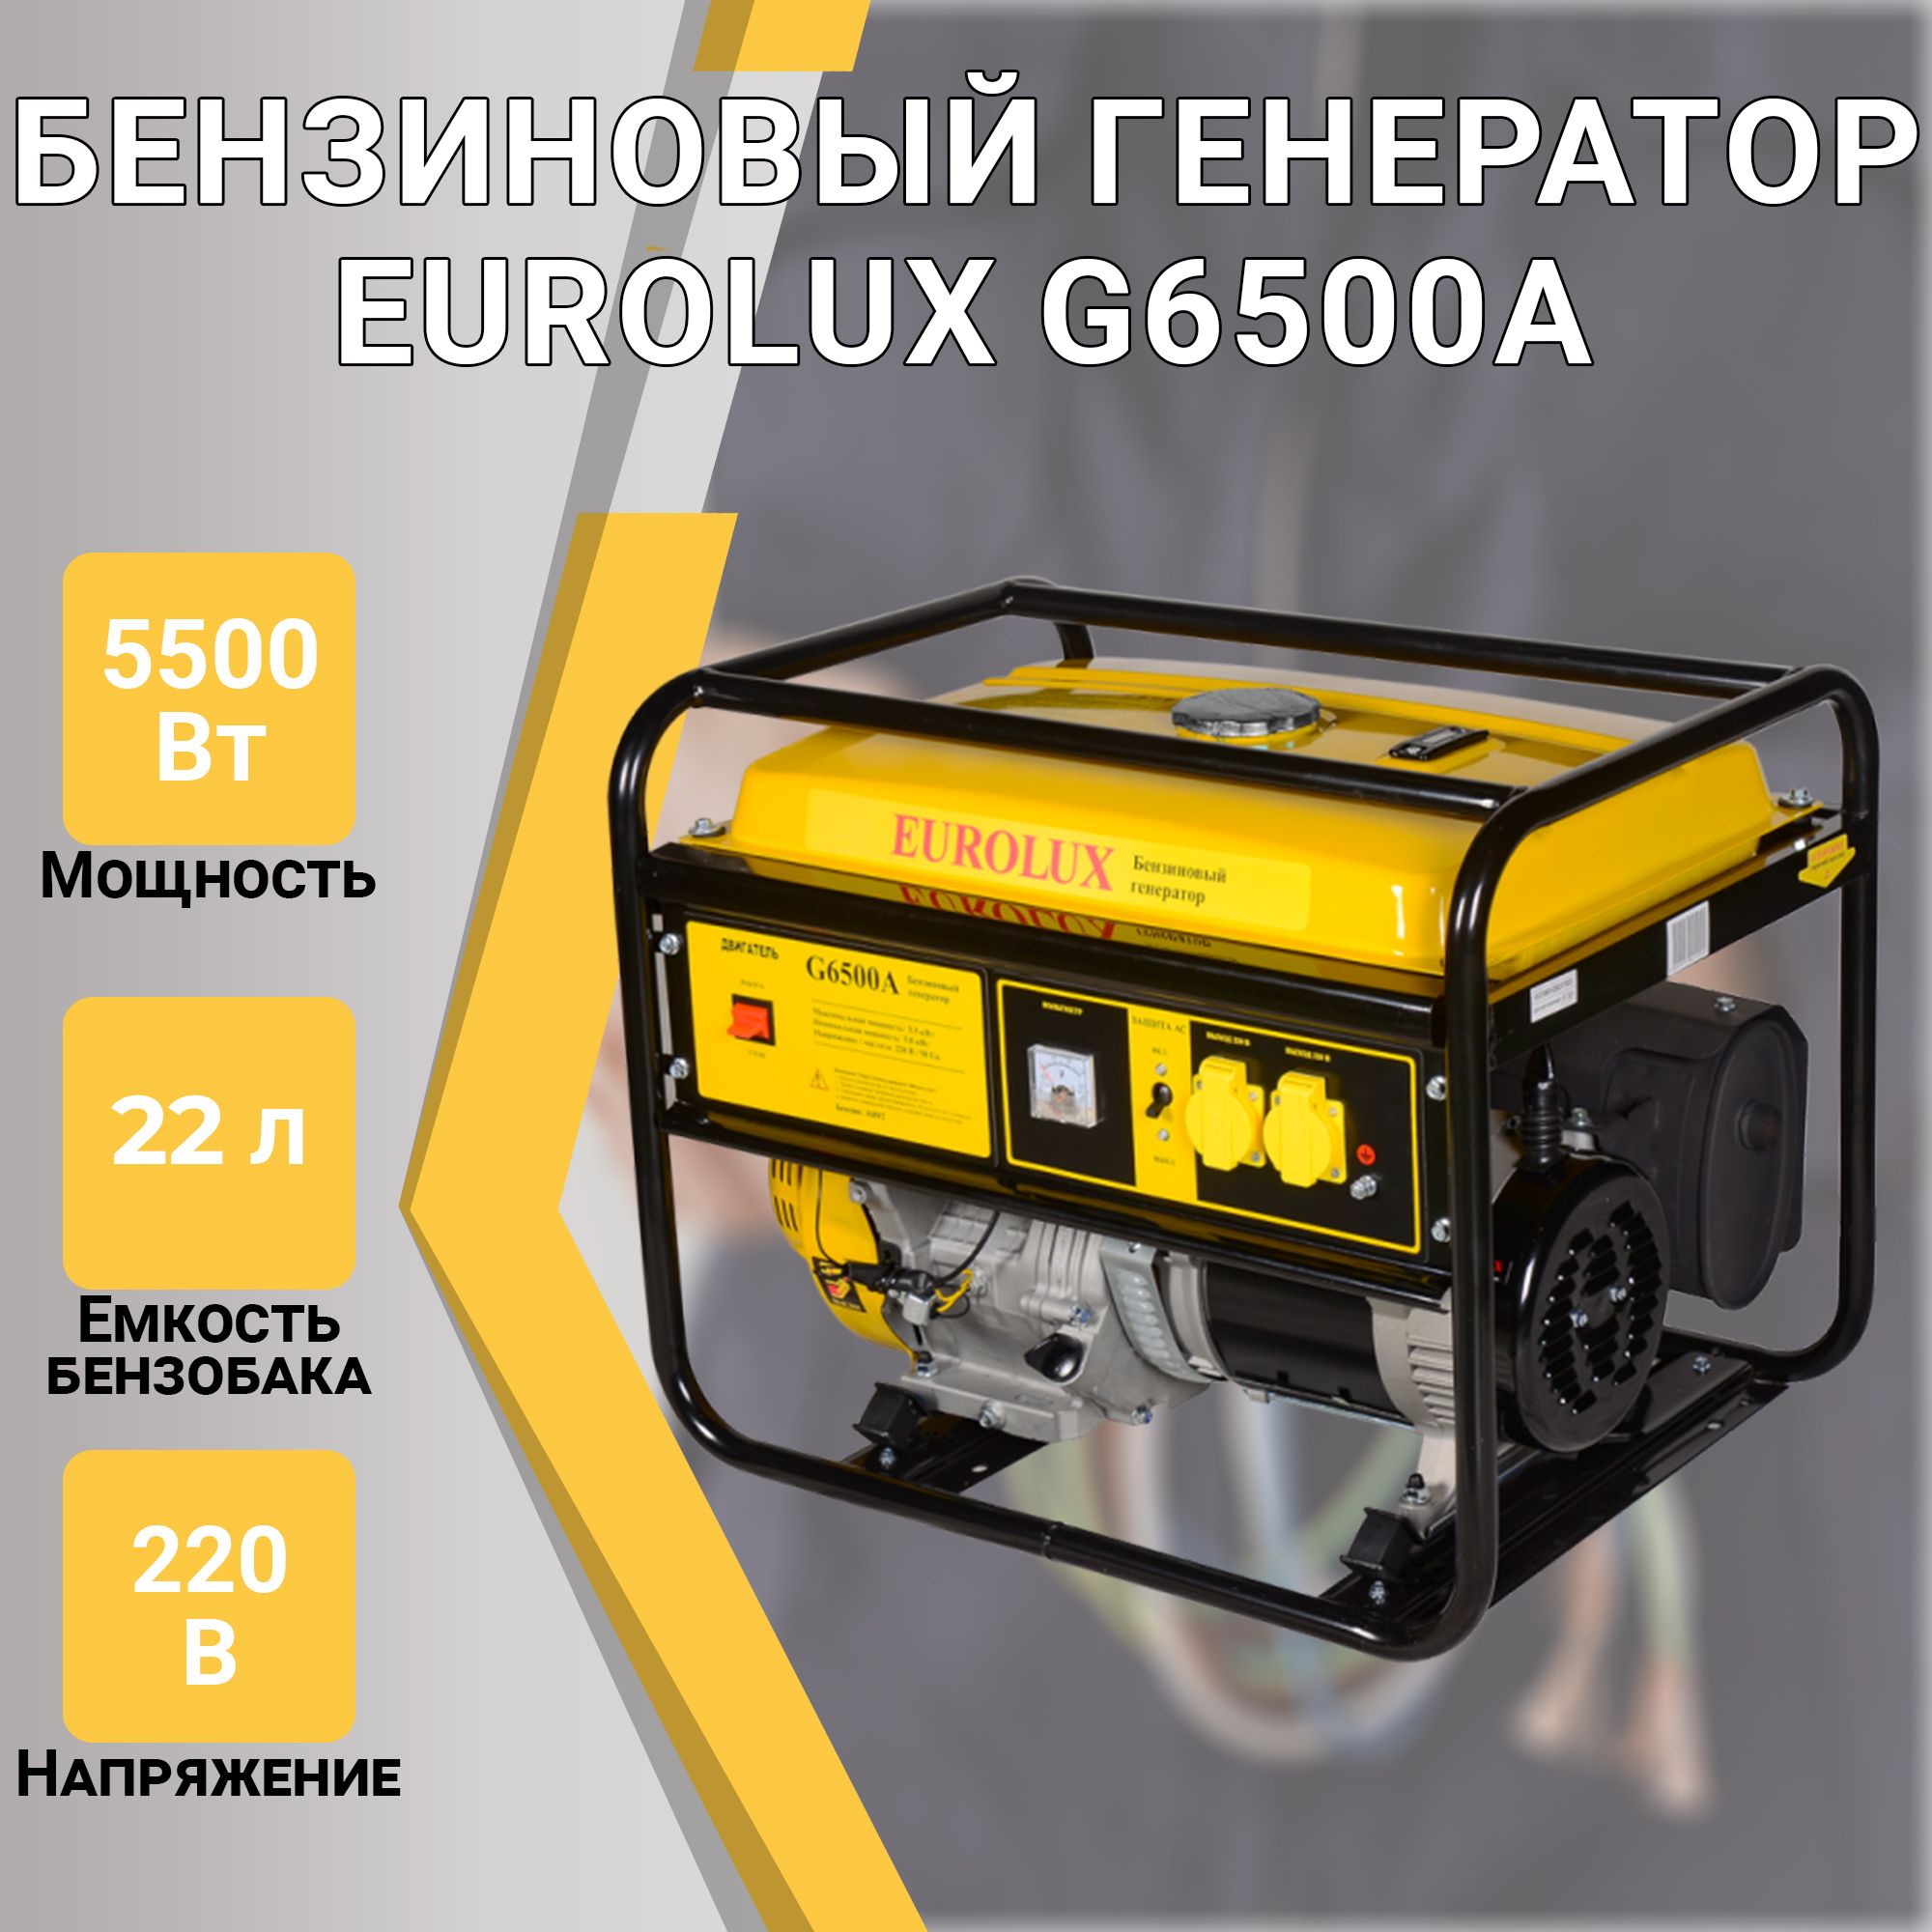 ЭлектрогенераторG6500AEurolux